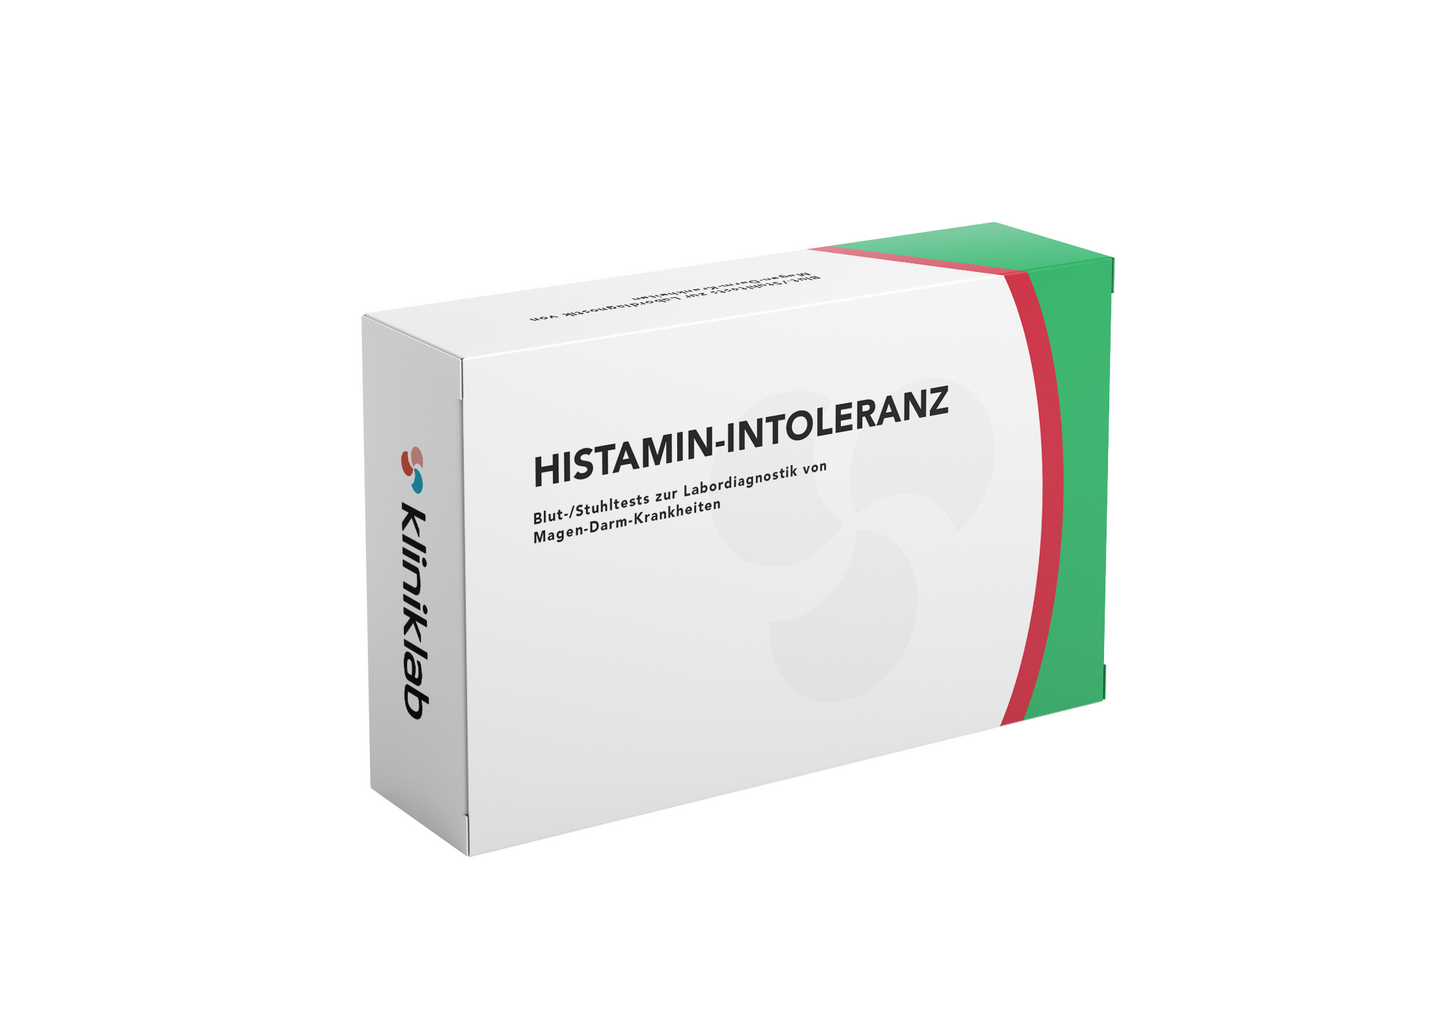 Histamin-Intoleranz und Mastzellaktivierungs-syndrom (MCAS)